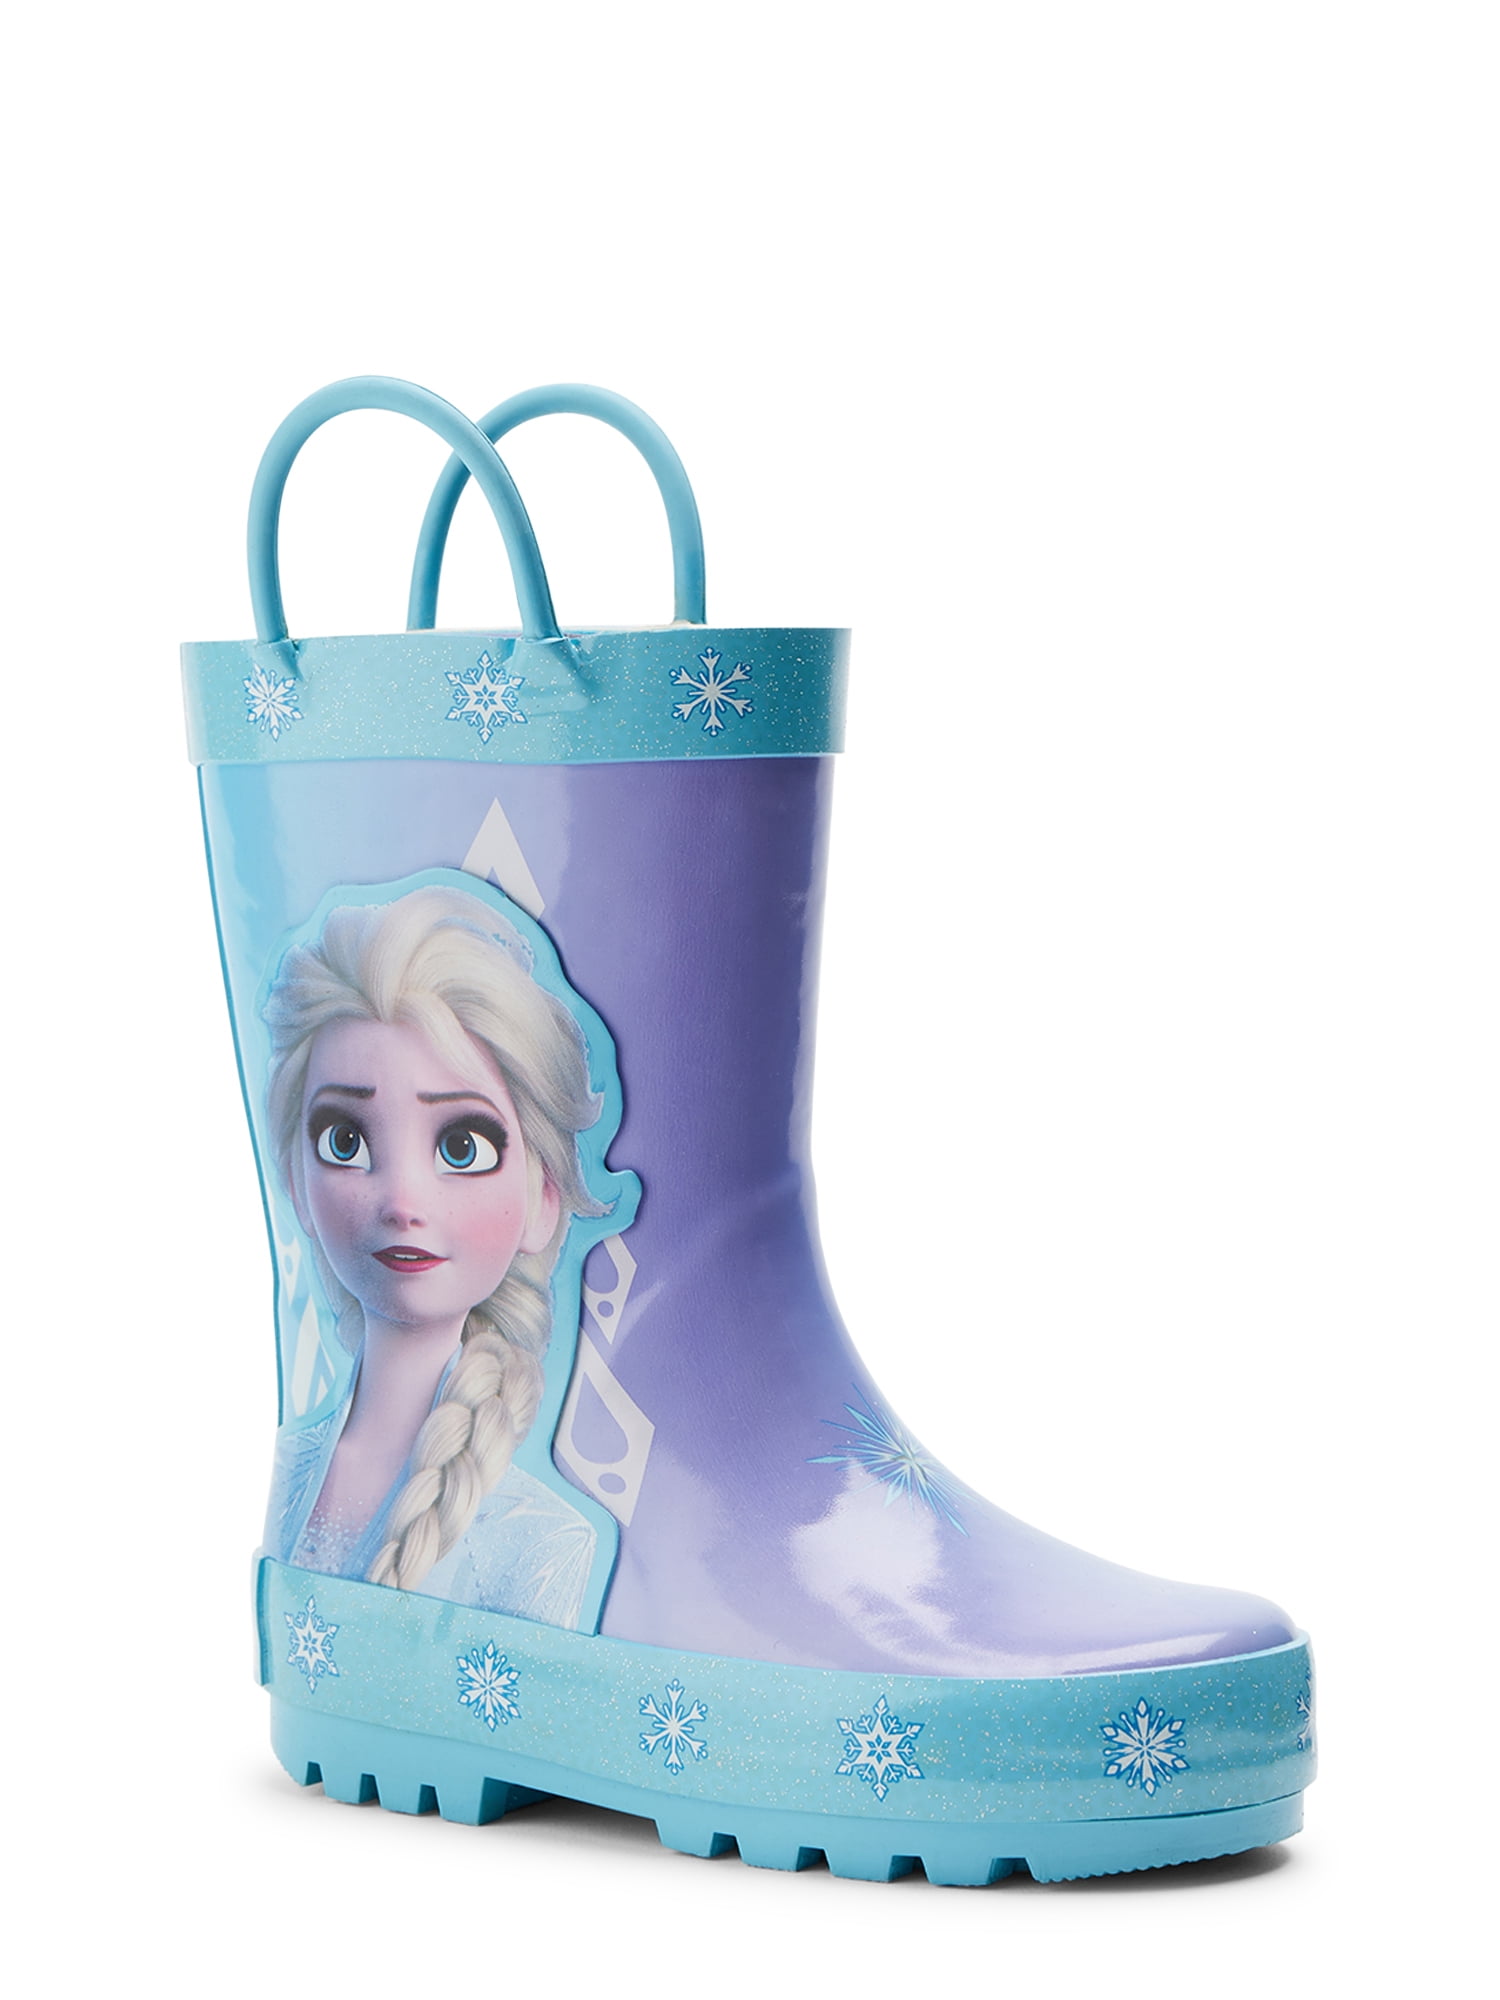 NWT Disney Store Frozen 2 Elsa Rain Boots Girls 1 